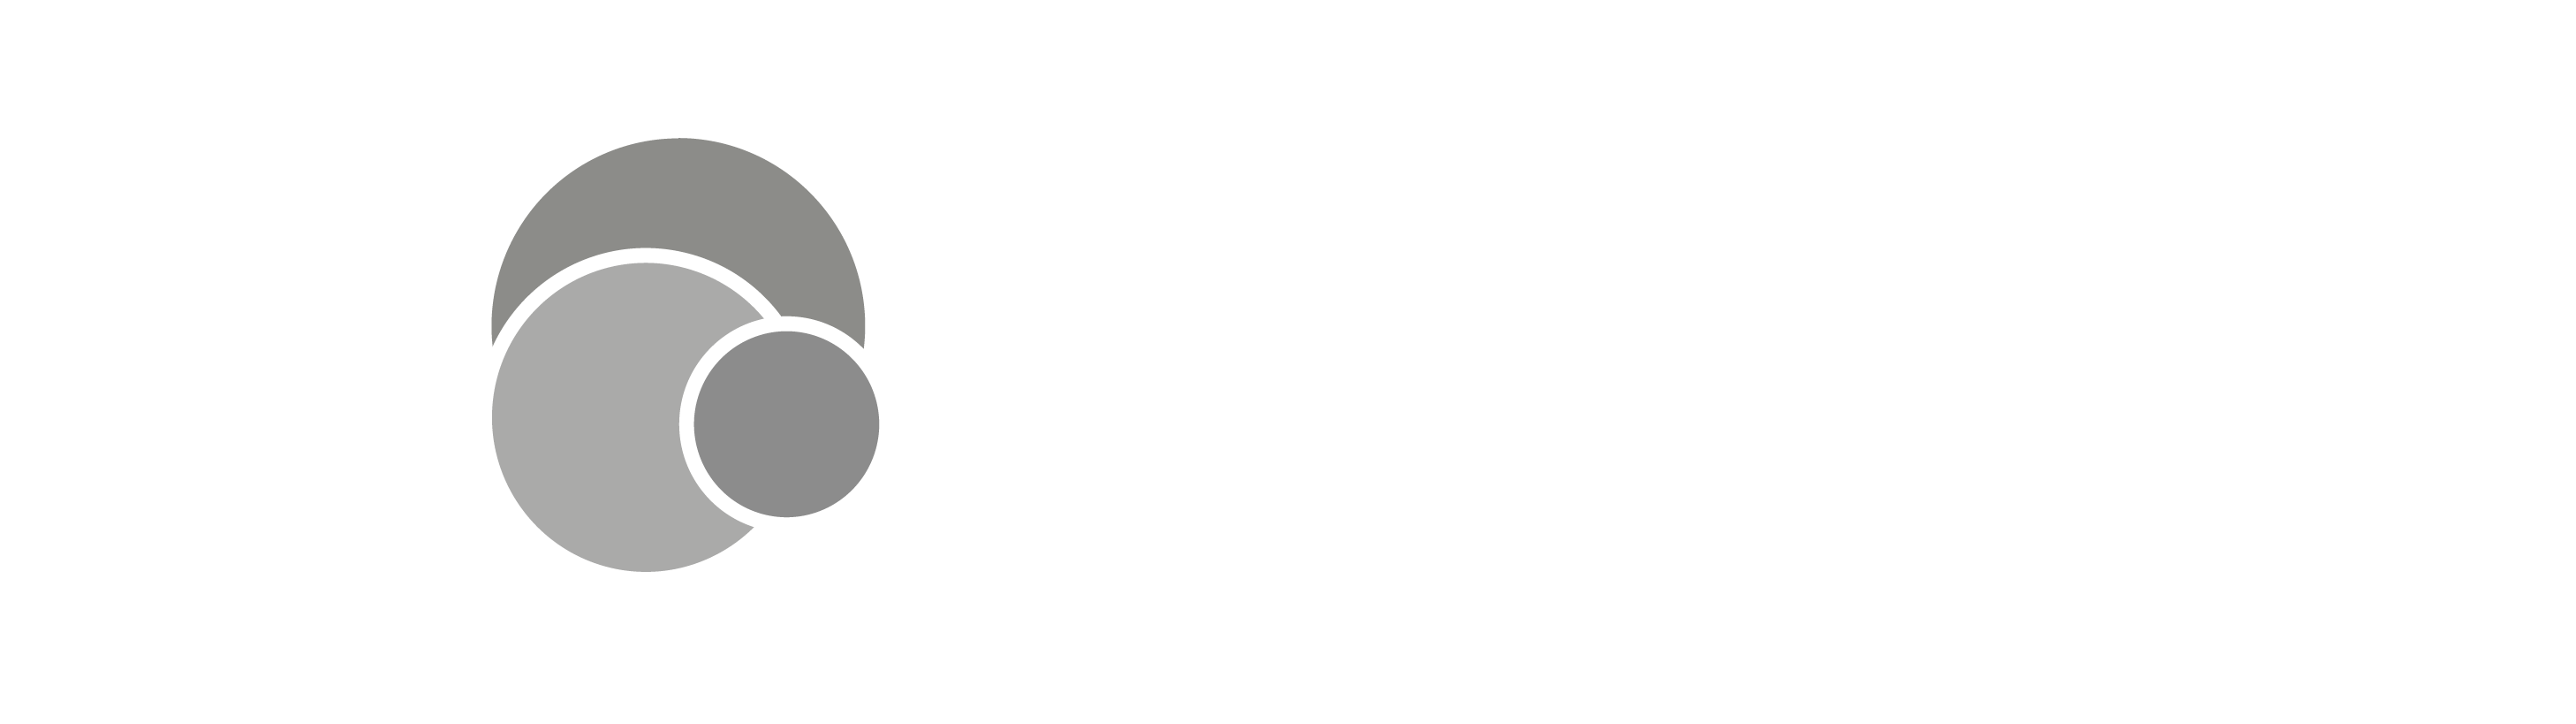 pagbank